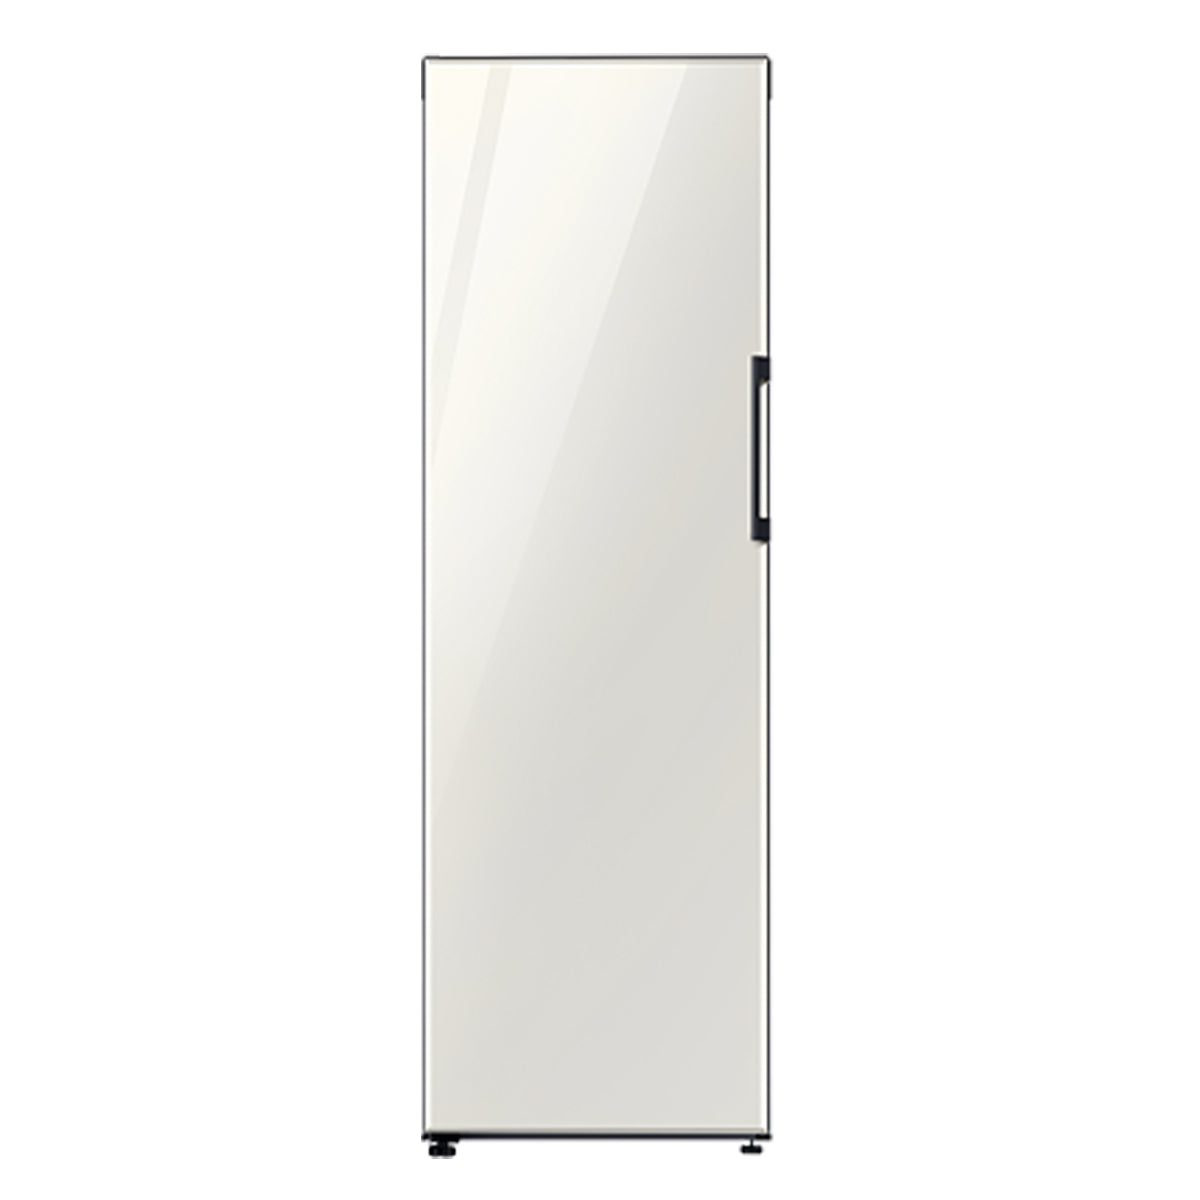 Samsung Refrigerador Bespoke - 14 Pies